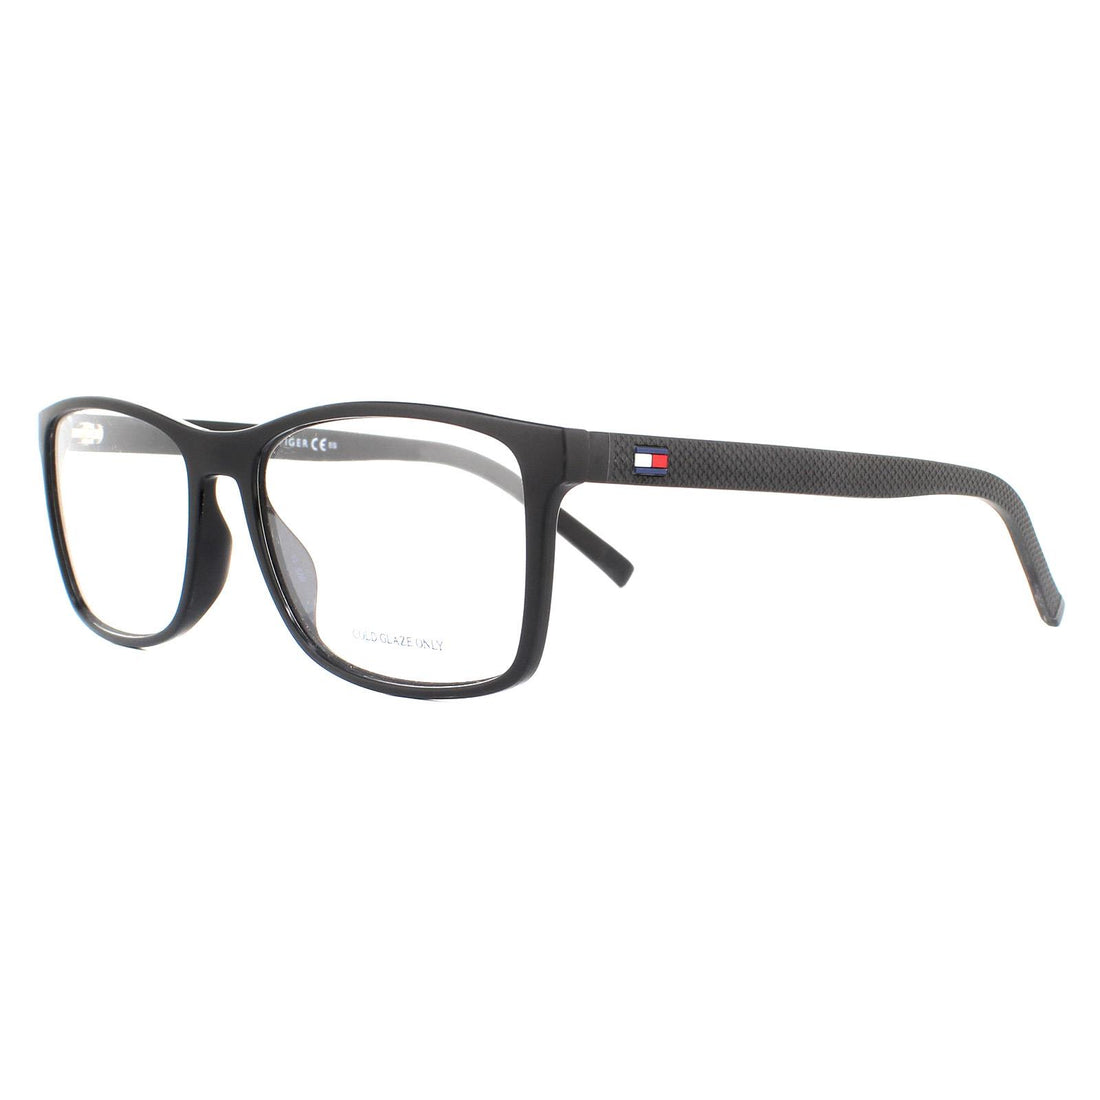 Tommy Hilfiger Glasses Frames TH 1785 003 Matte Black Men